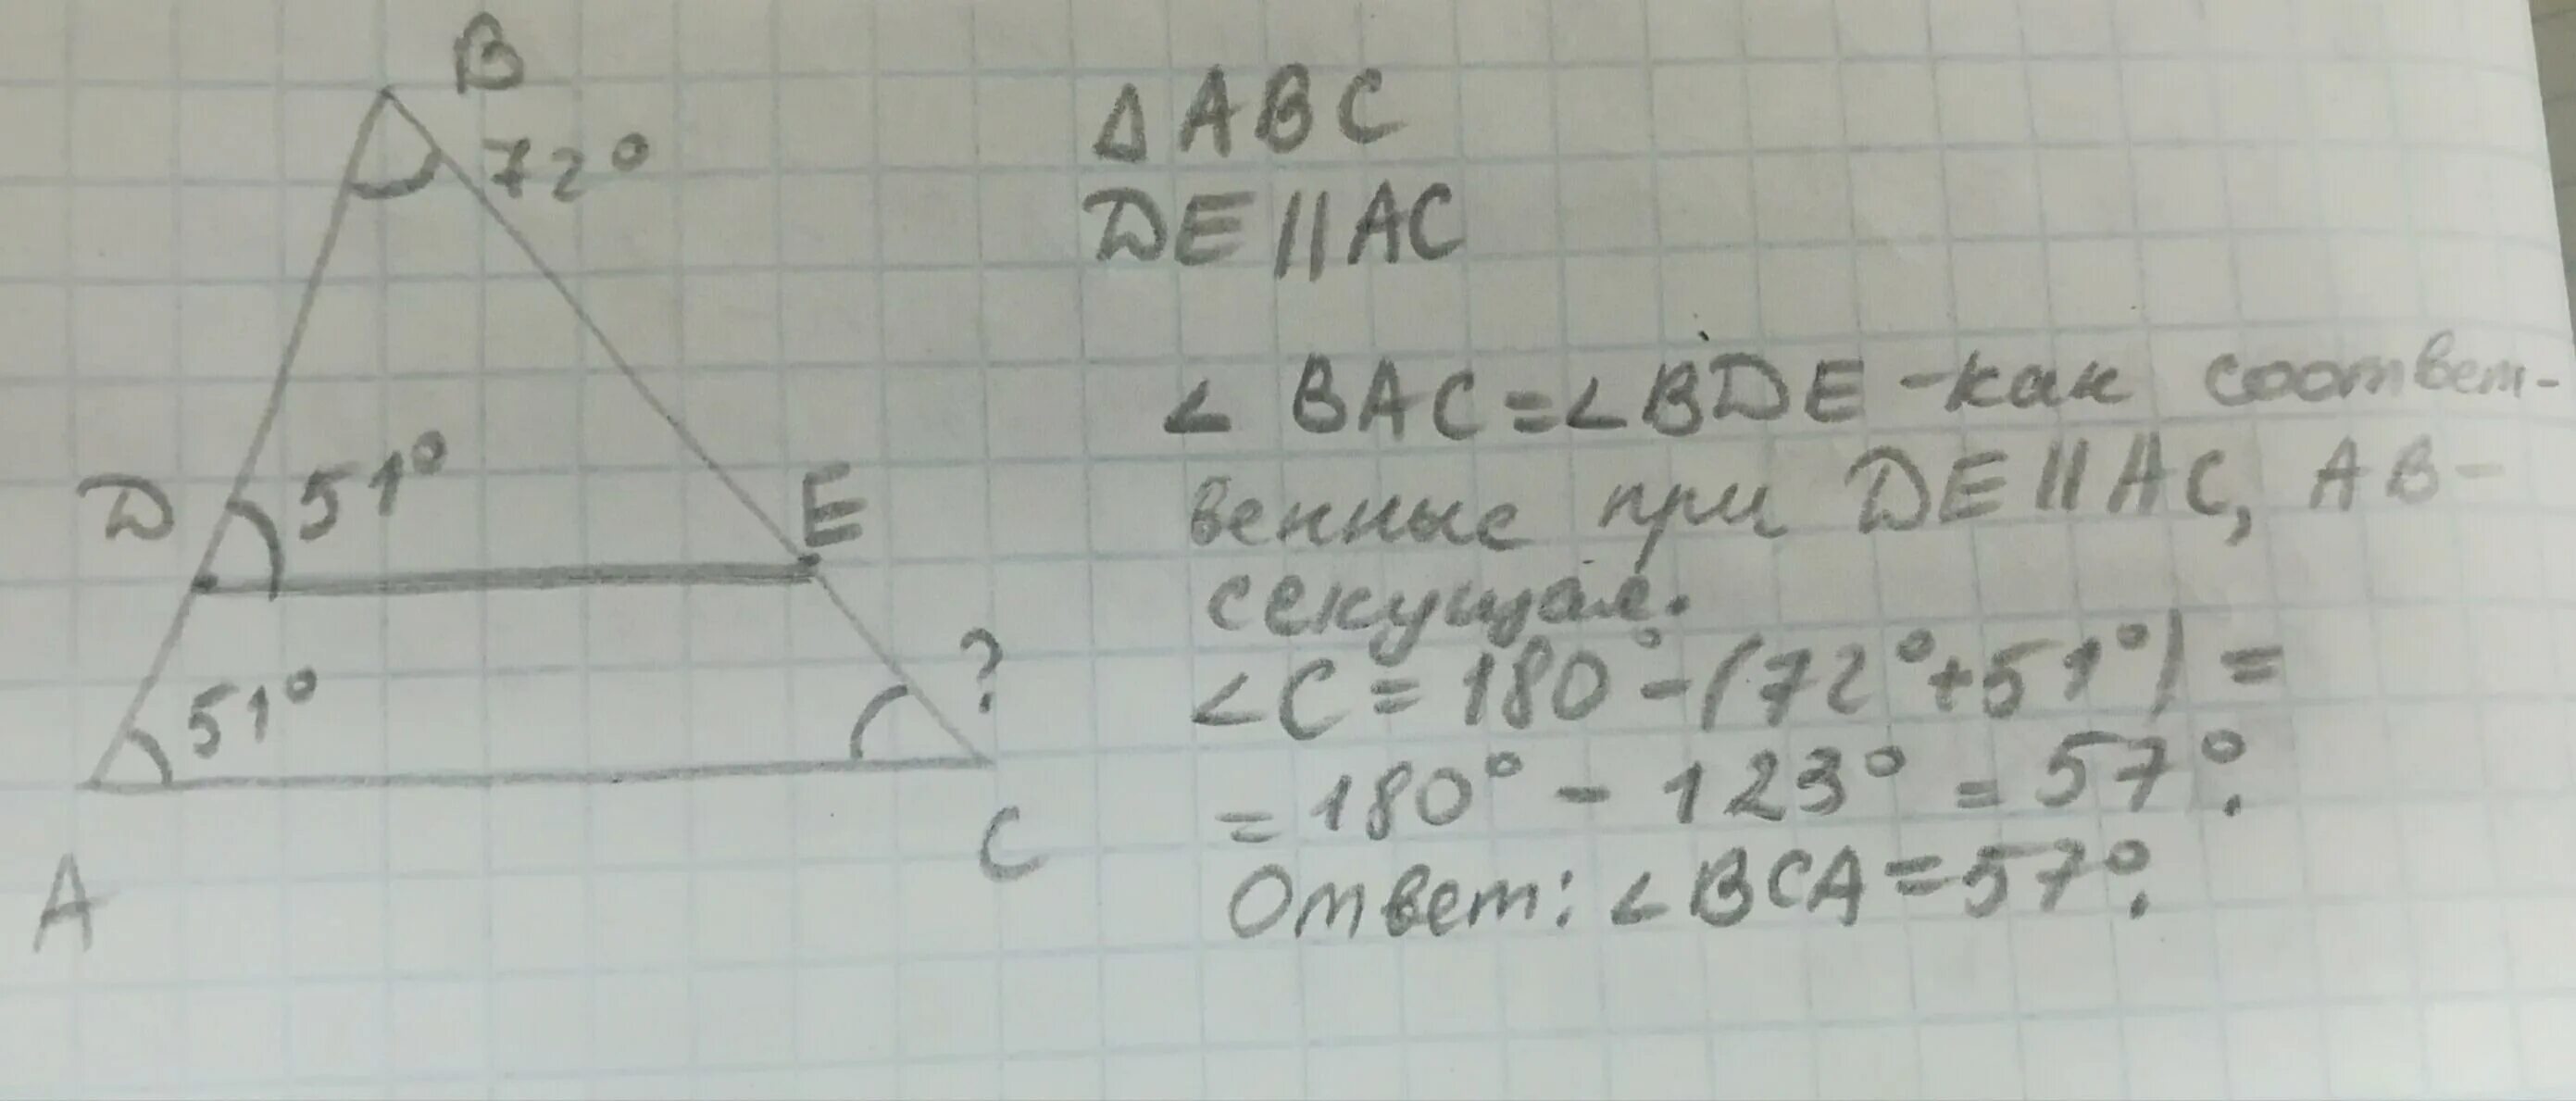 Известно что ас бс аб 10. В треугольнике ABC провели de параллельно AC известно что d. Нарисуй треугольник ABC И проведи de AC известно что d ab e BC. Нарисуй треугольник ABC И проведи de параллельную AC. Нарисуйте треугольник ABC И проведите de AC известно что д параллельно.